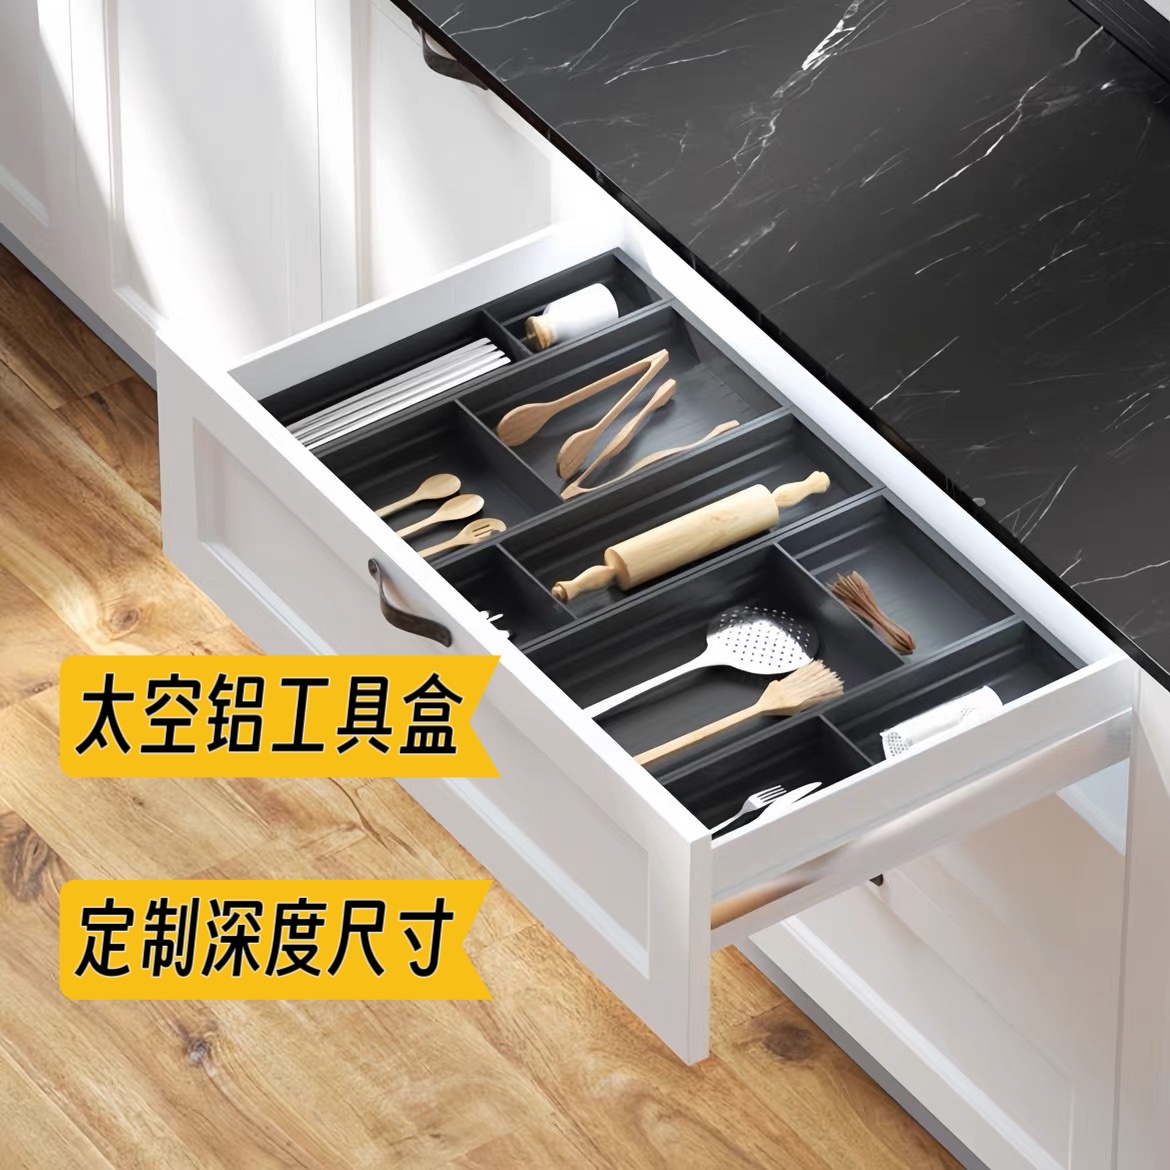 抽屉内置餐具刀叉筷子收纳盒保鲜膜剪刀厨房小工具置物架可定制长